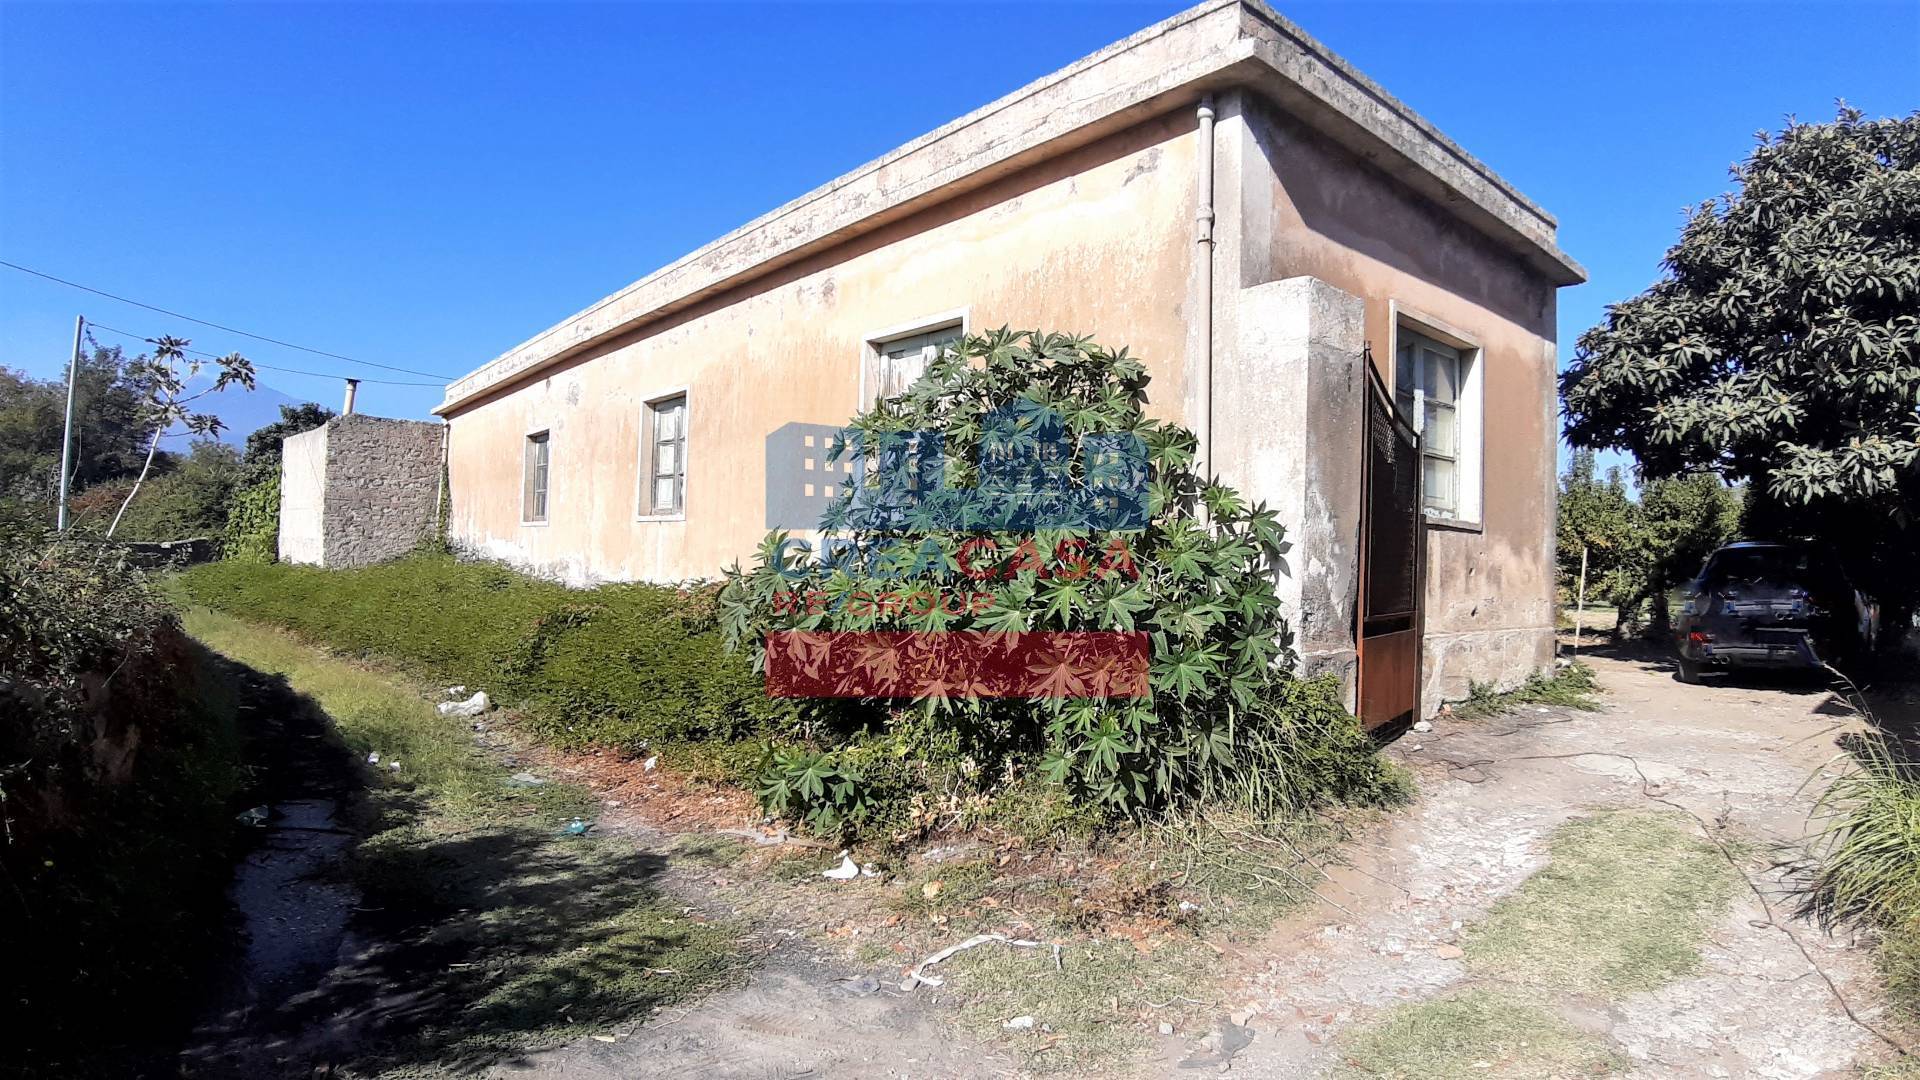 Terreno Agricolo in vendita a Giardini-Naxos, 4 locali, prezzo € 249.000 | PortaleAgenzieImmobiliari.it